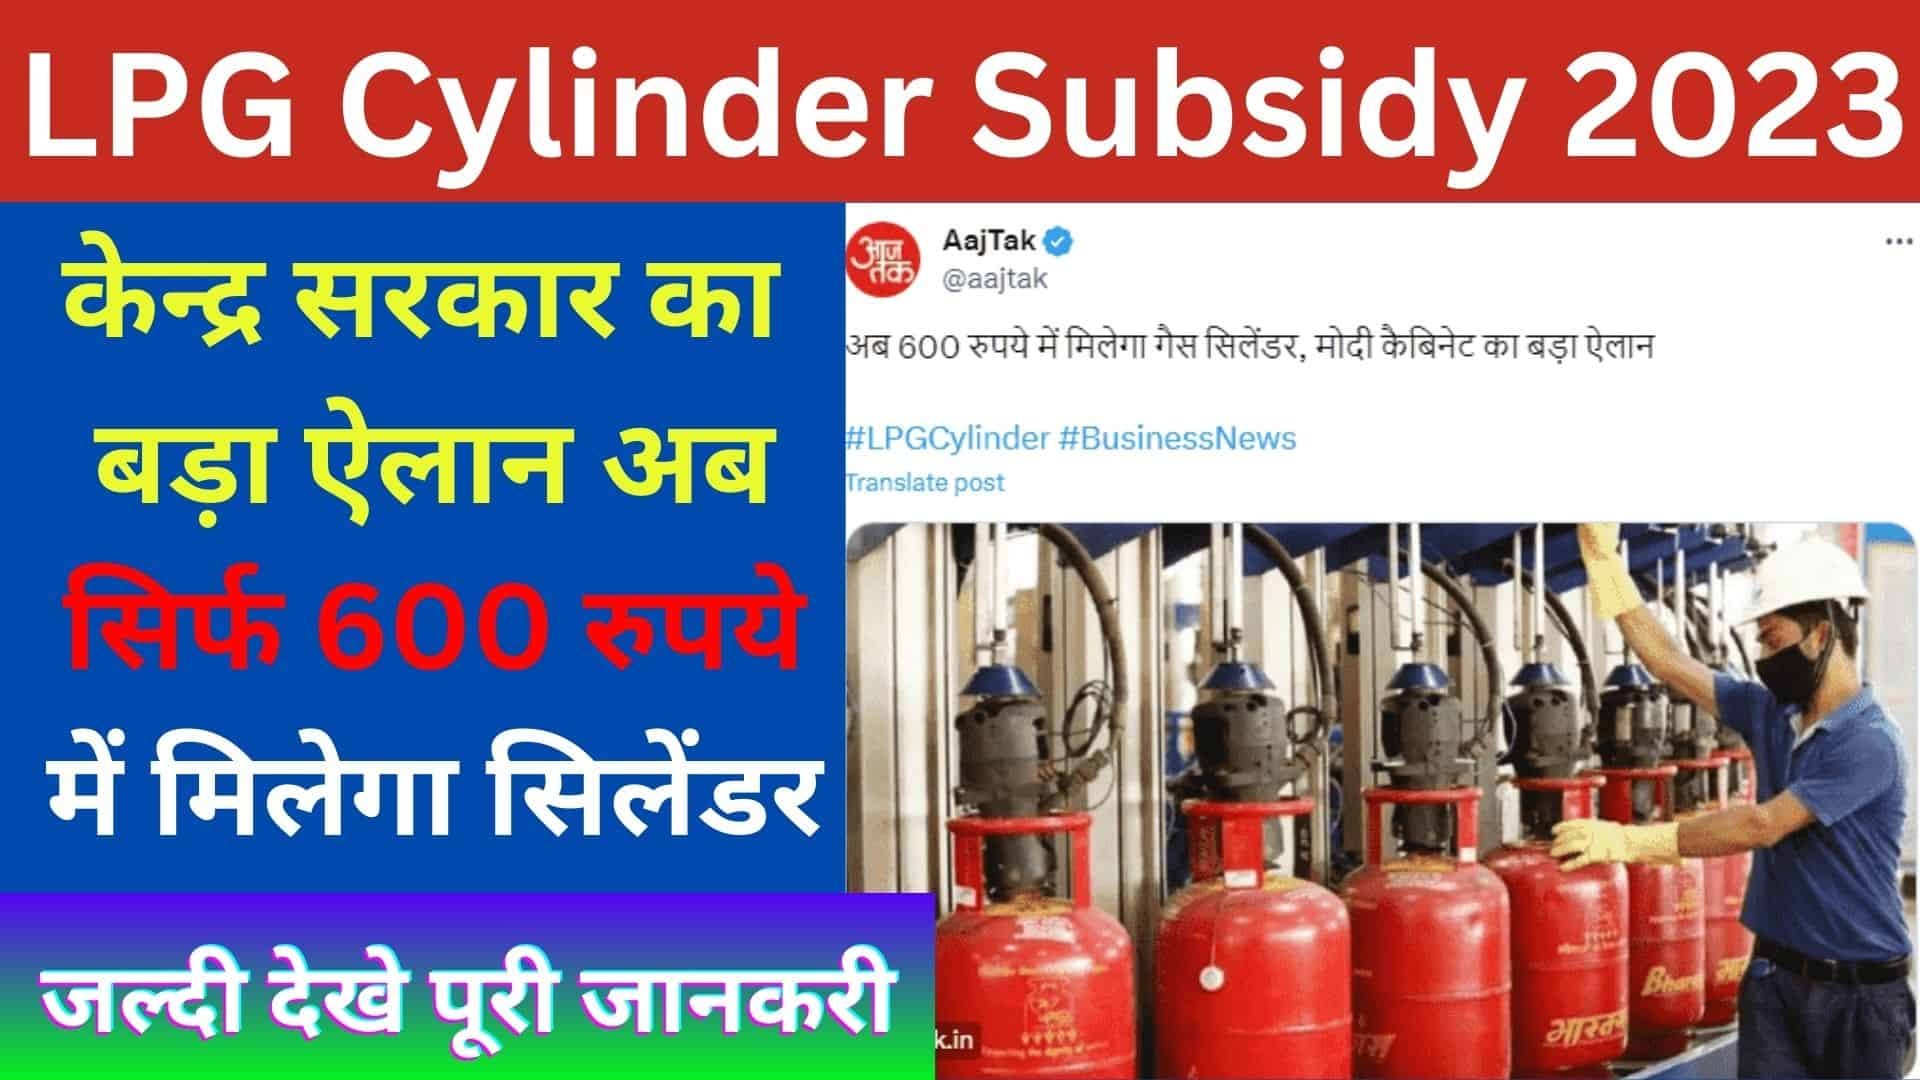 LPG Cylinder Subsidy 2023: केन्द्र सरकार का बड़ा ऐलान अब सिर्फ 600 रुपये में मिलेगा सिलेंडर जल्दी देखे पूरी जानकरी